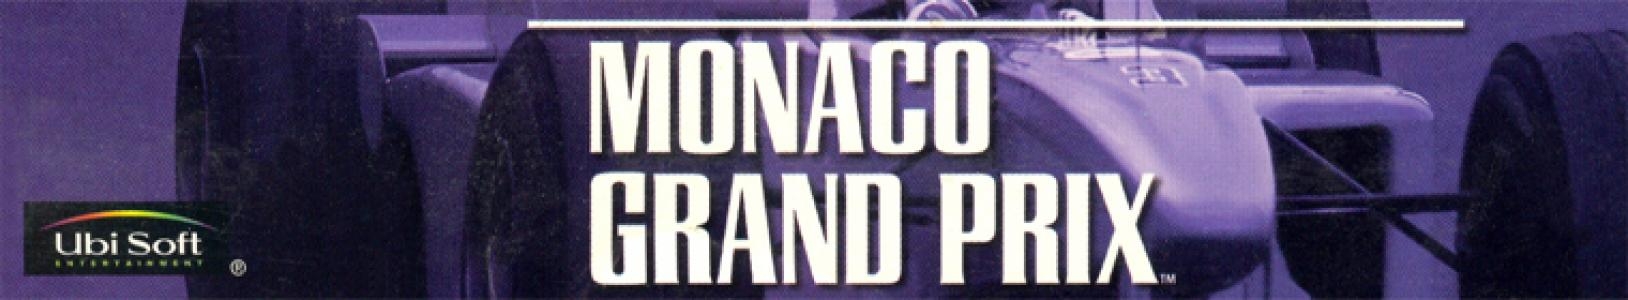 Monaco Grand Prix banner